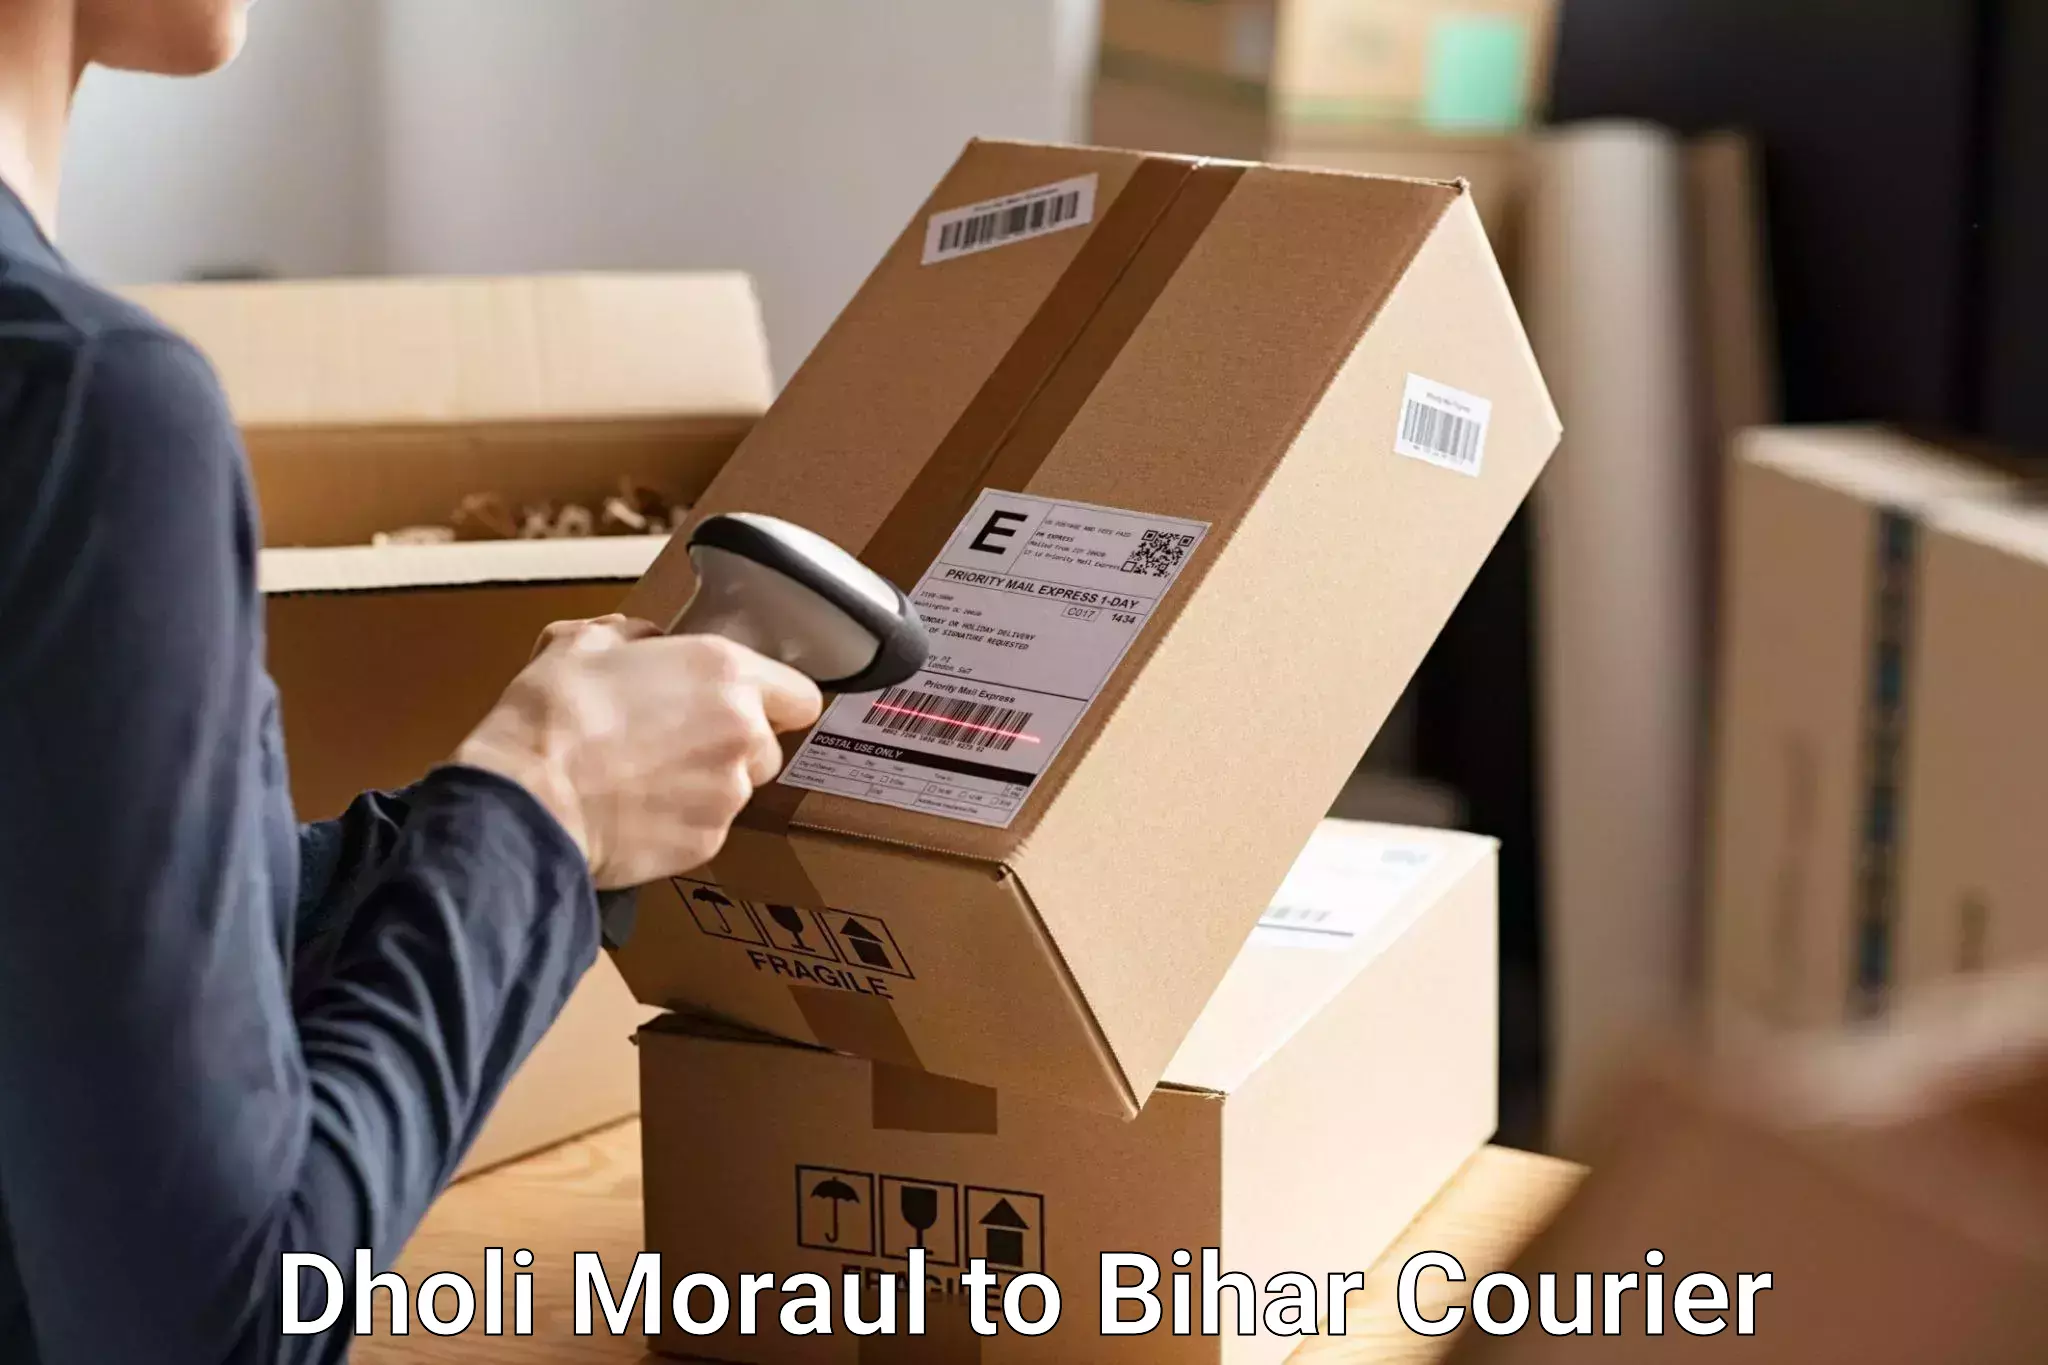 Luggage delivery logistics Dholi Moraul to Malmaliya